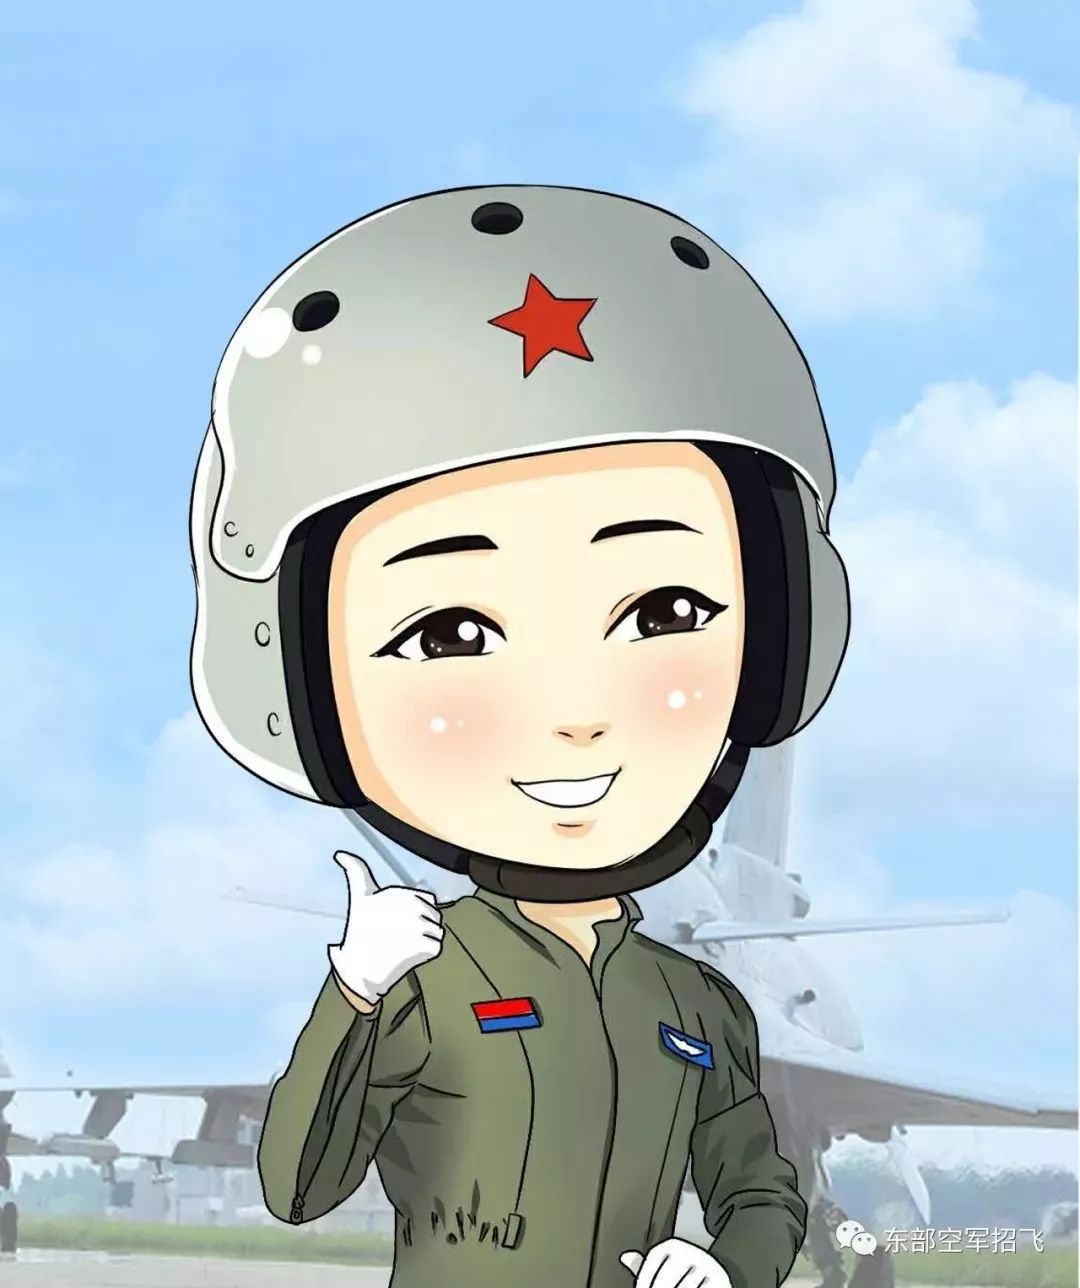 万里腾空展翅翱翔2019年空军招收选拔第12批女飞行学员